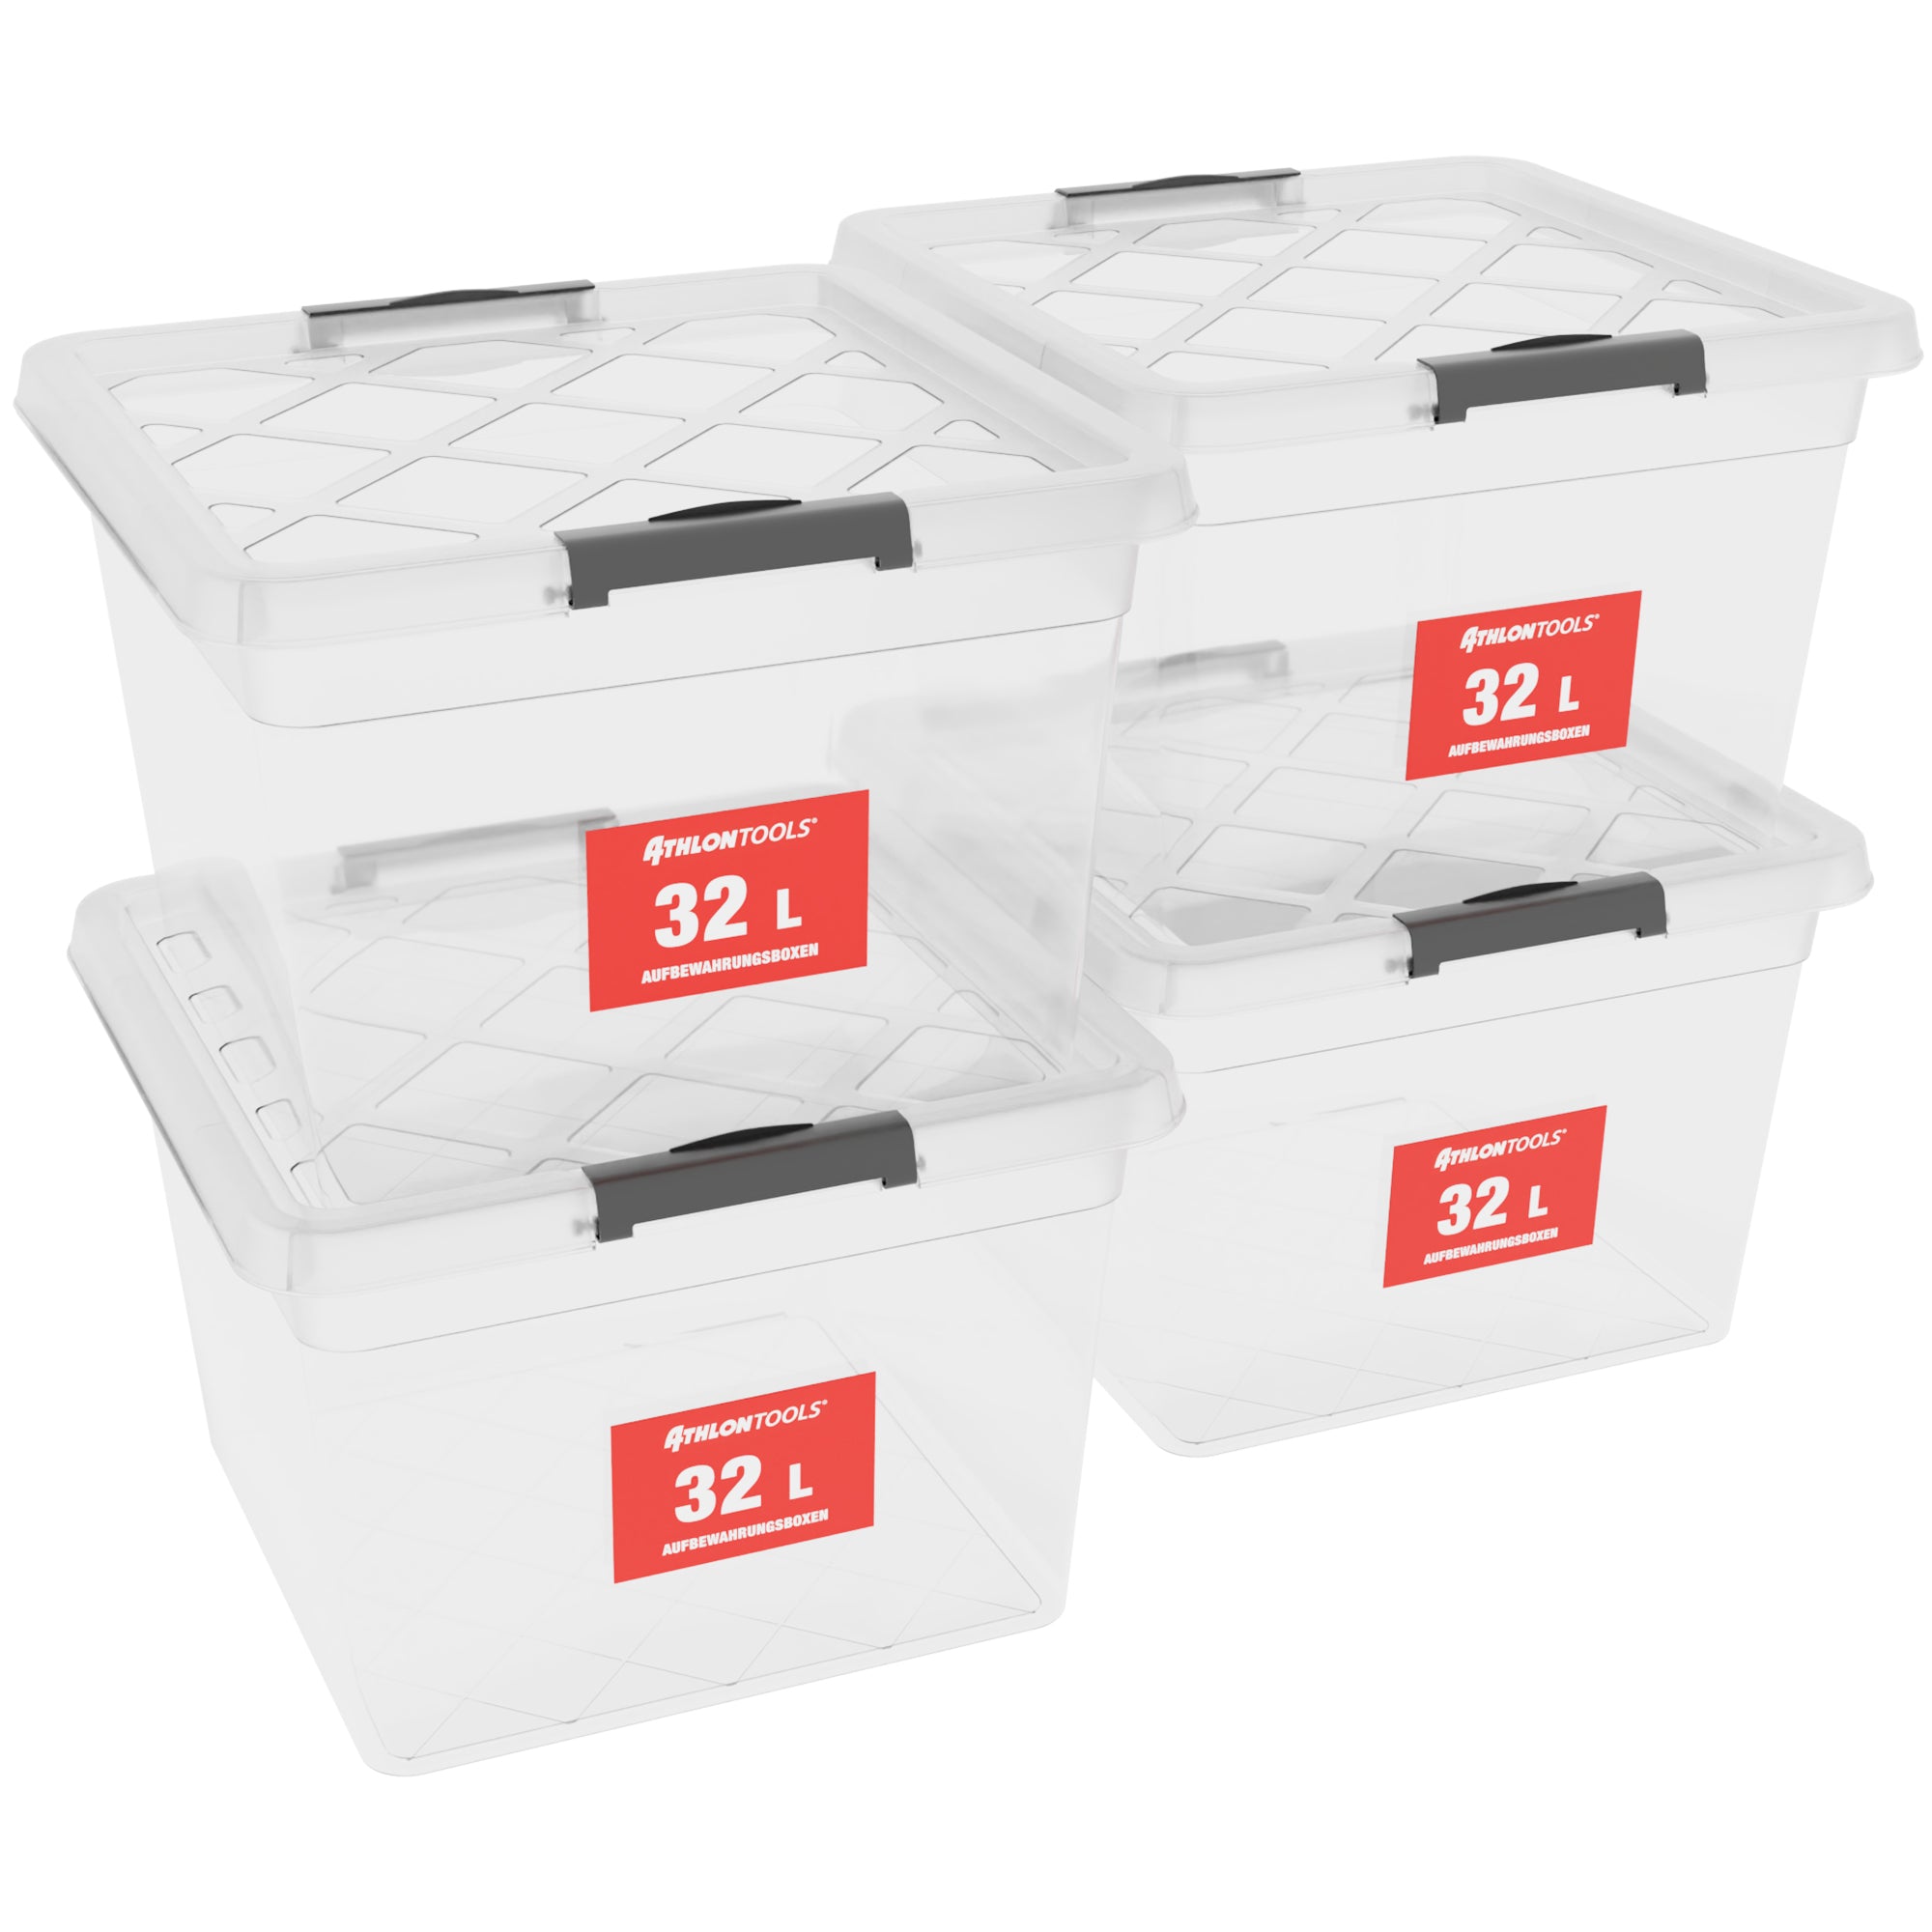 Aufbewahrungsbox mit Deckel 35L 4-er Pack online kaufen I Master